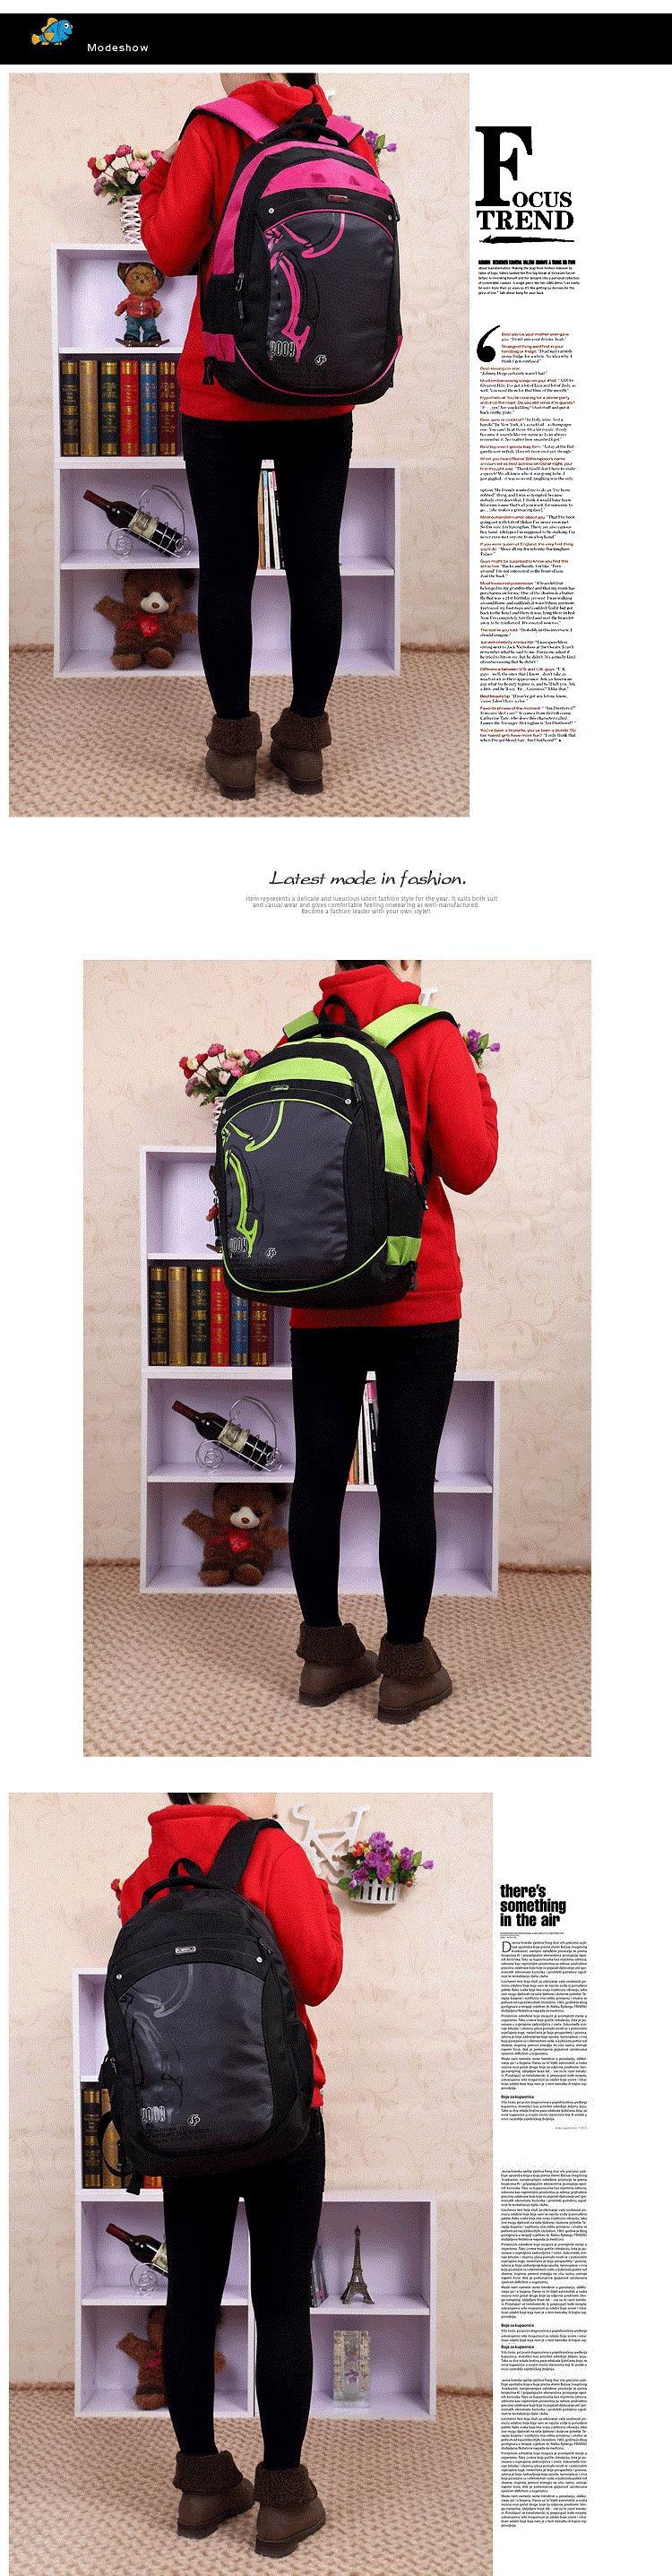 school-trolley-backpack-bag-wheels-backpack-luggage-travel-7